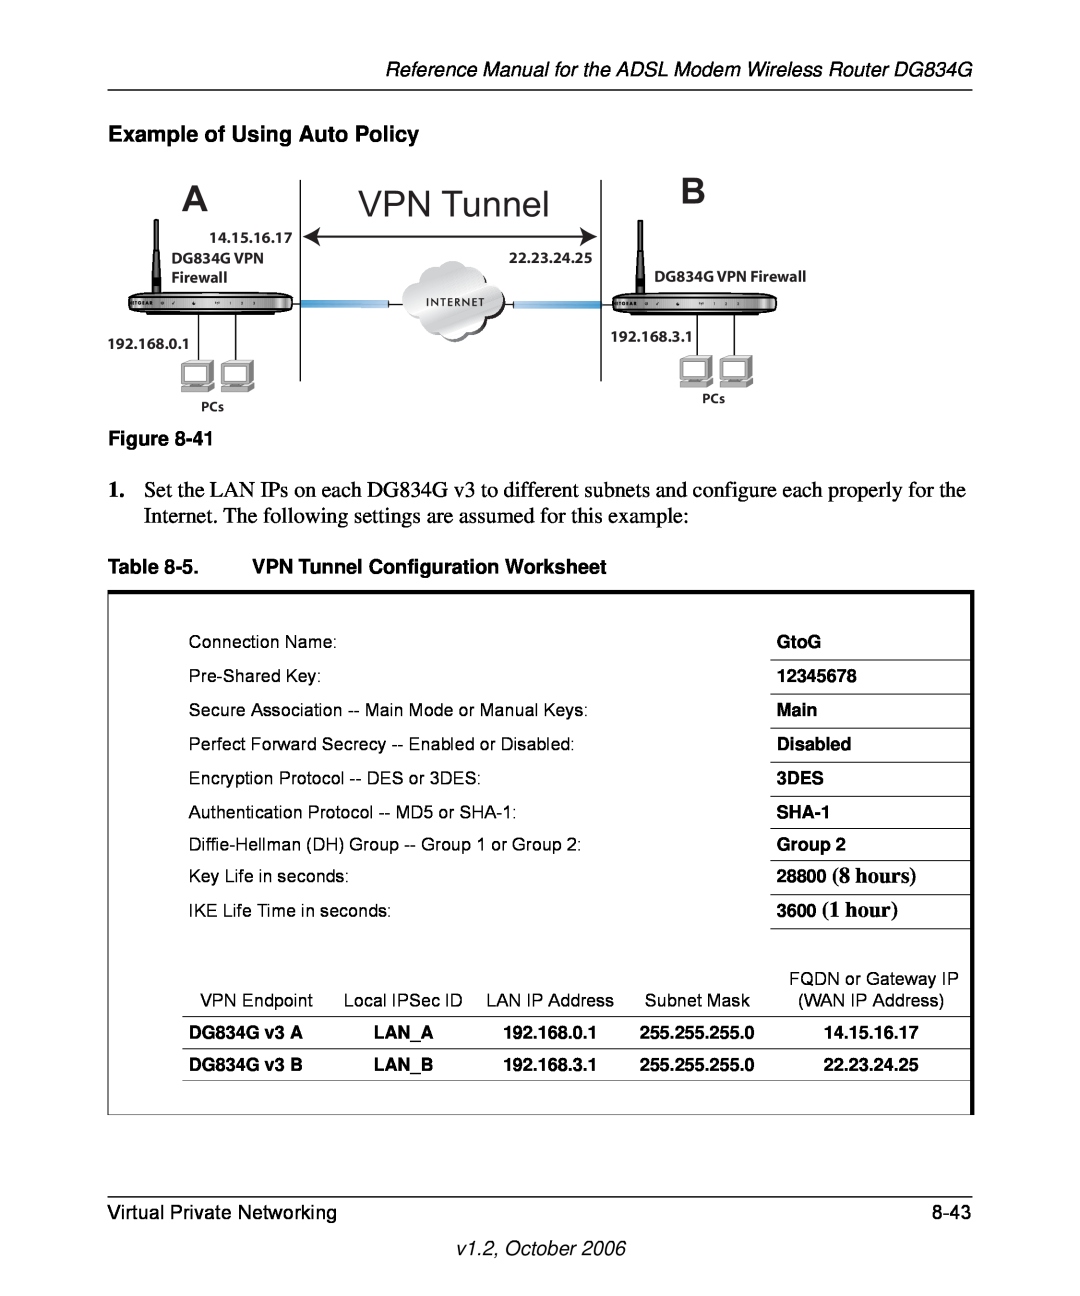 NETGEAR manual VPN Tunnel, Virtual Private Networking, 8-43, v1.2, October, 14.15.16.17 DG834G VPN22.23.24.25 Firewall 